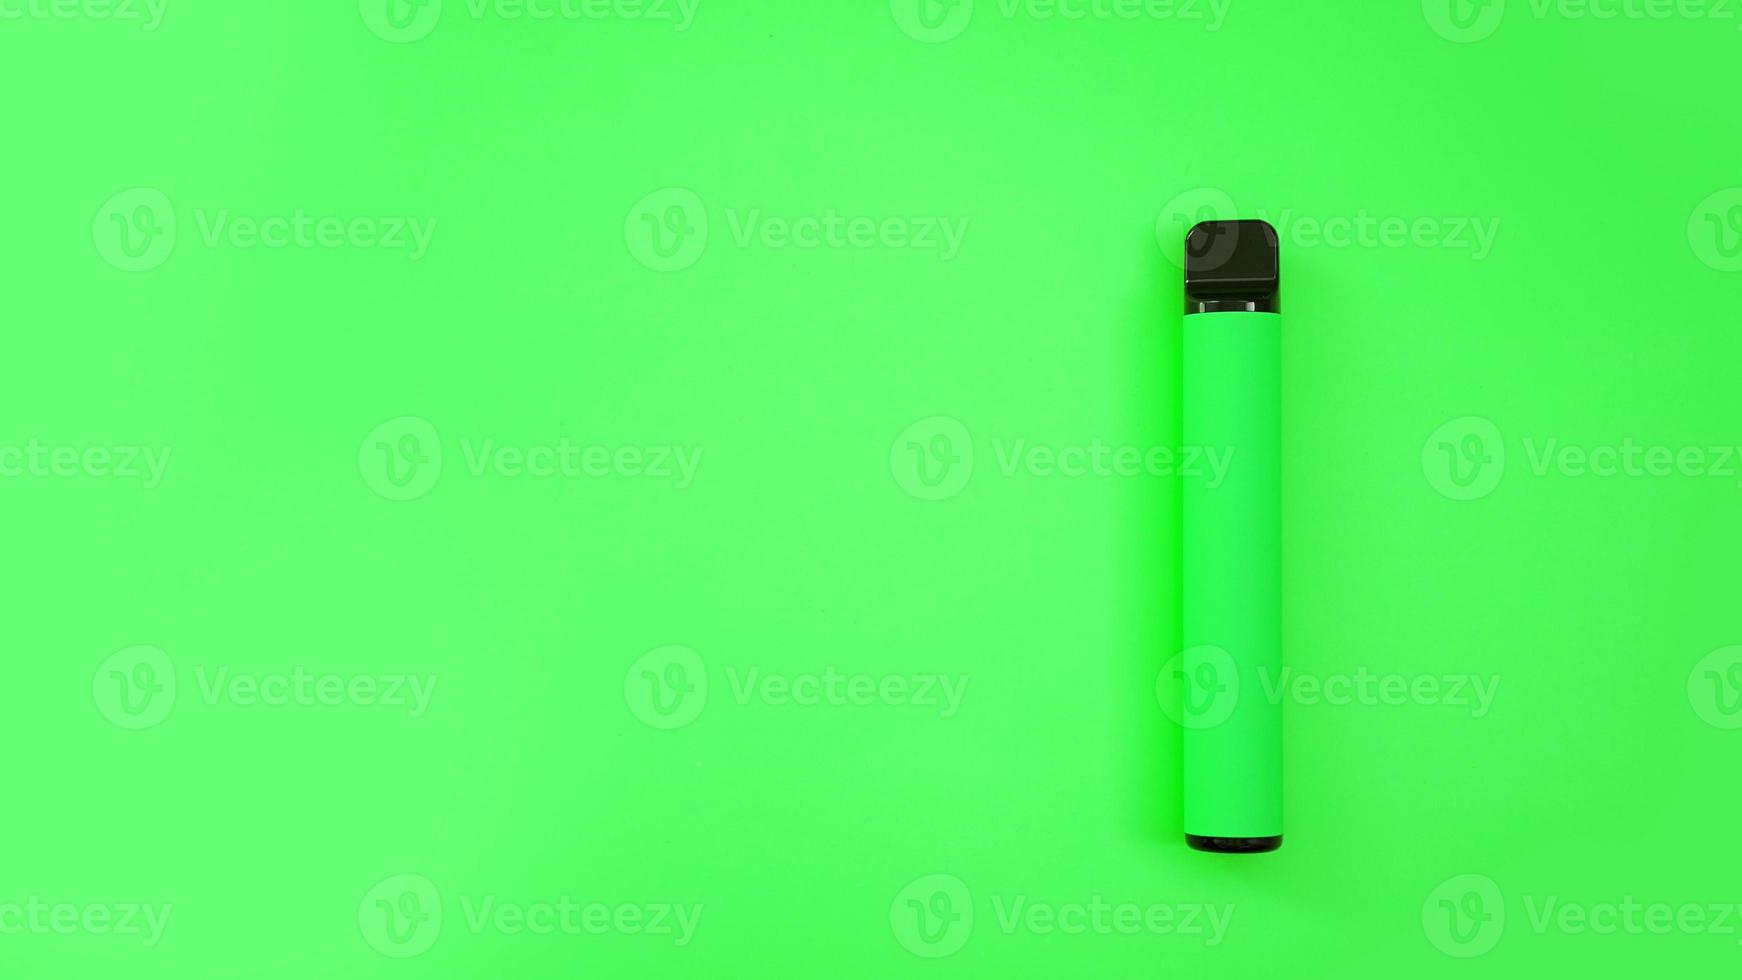 groene wegwerp elektronische sigaret op lichte achtergrond foto